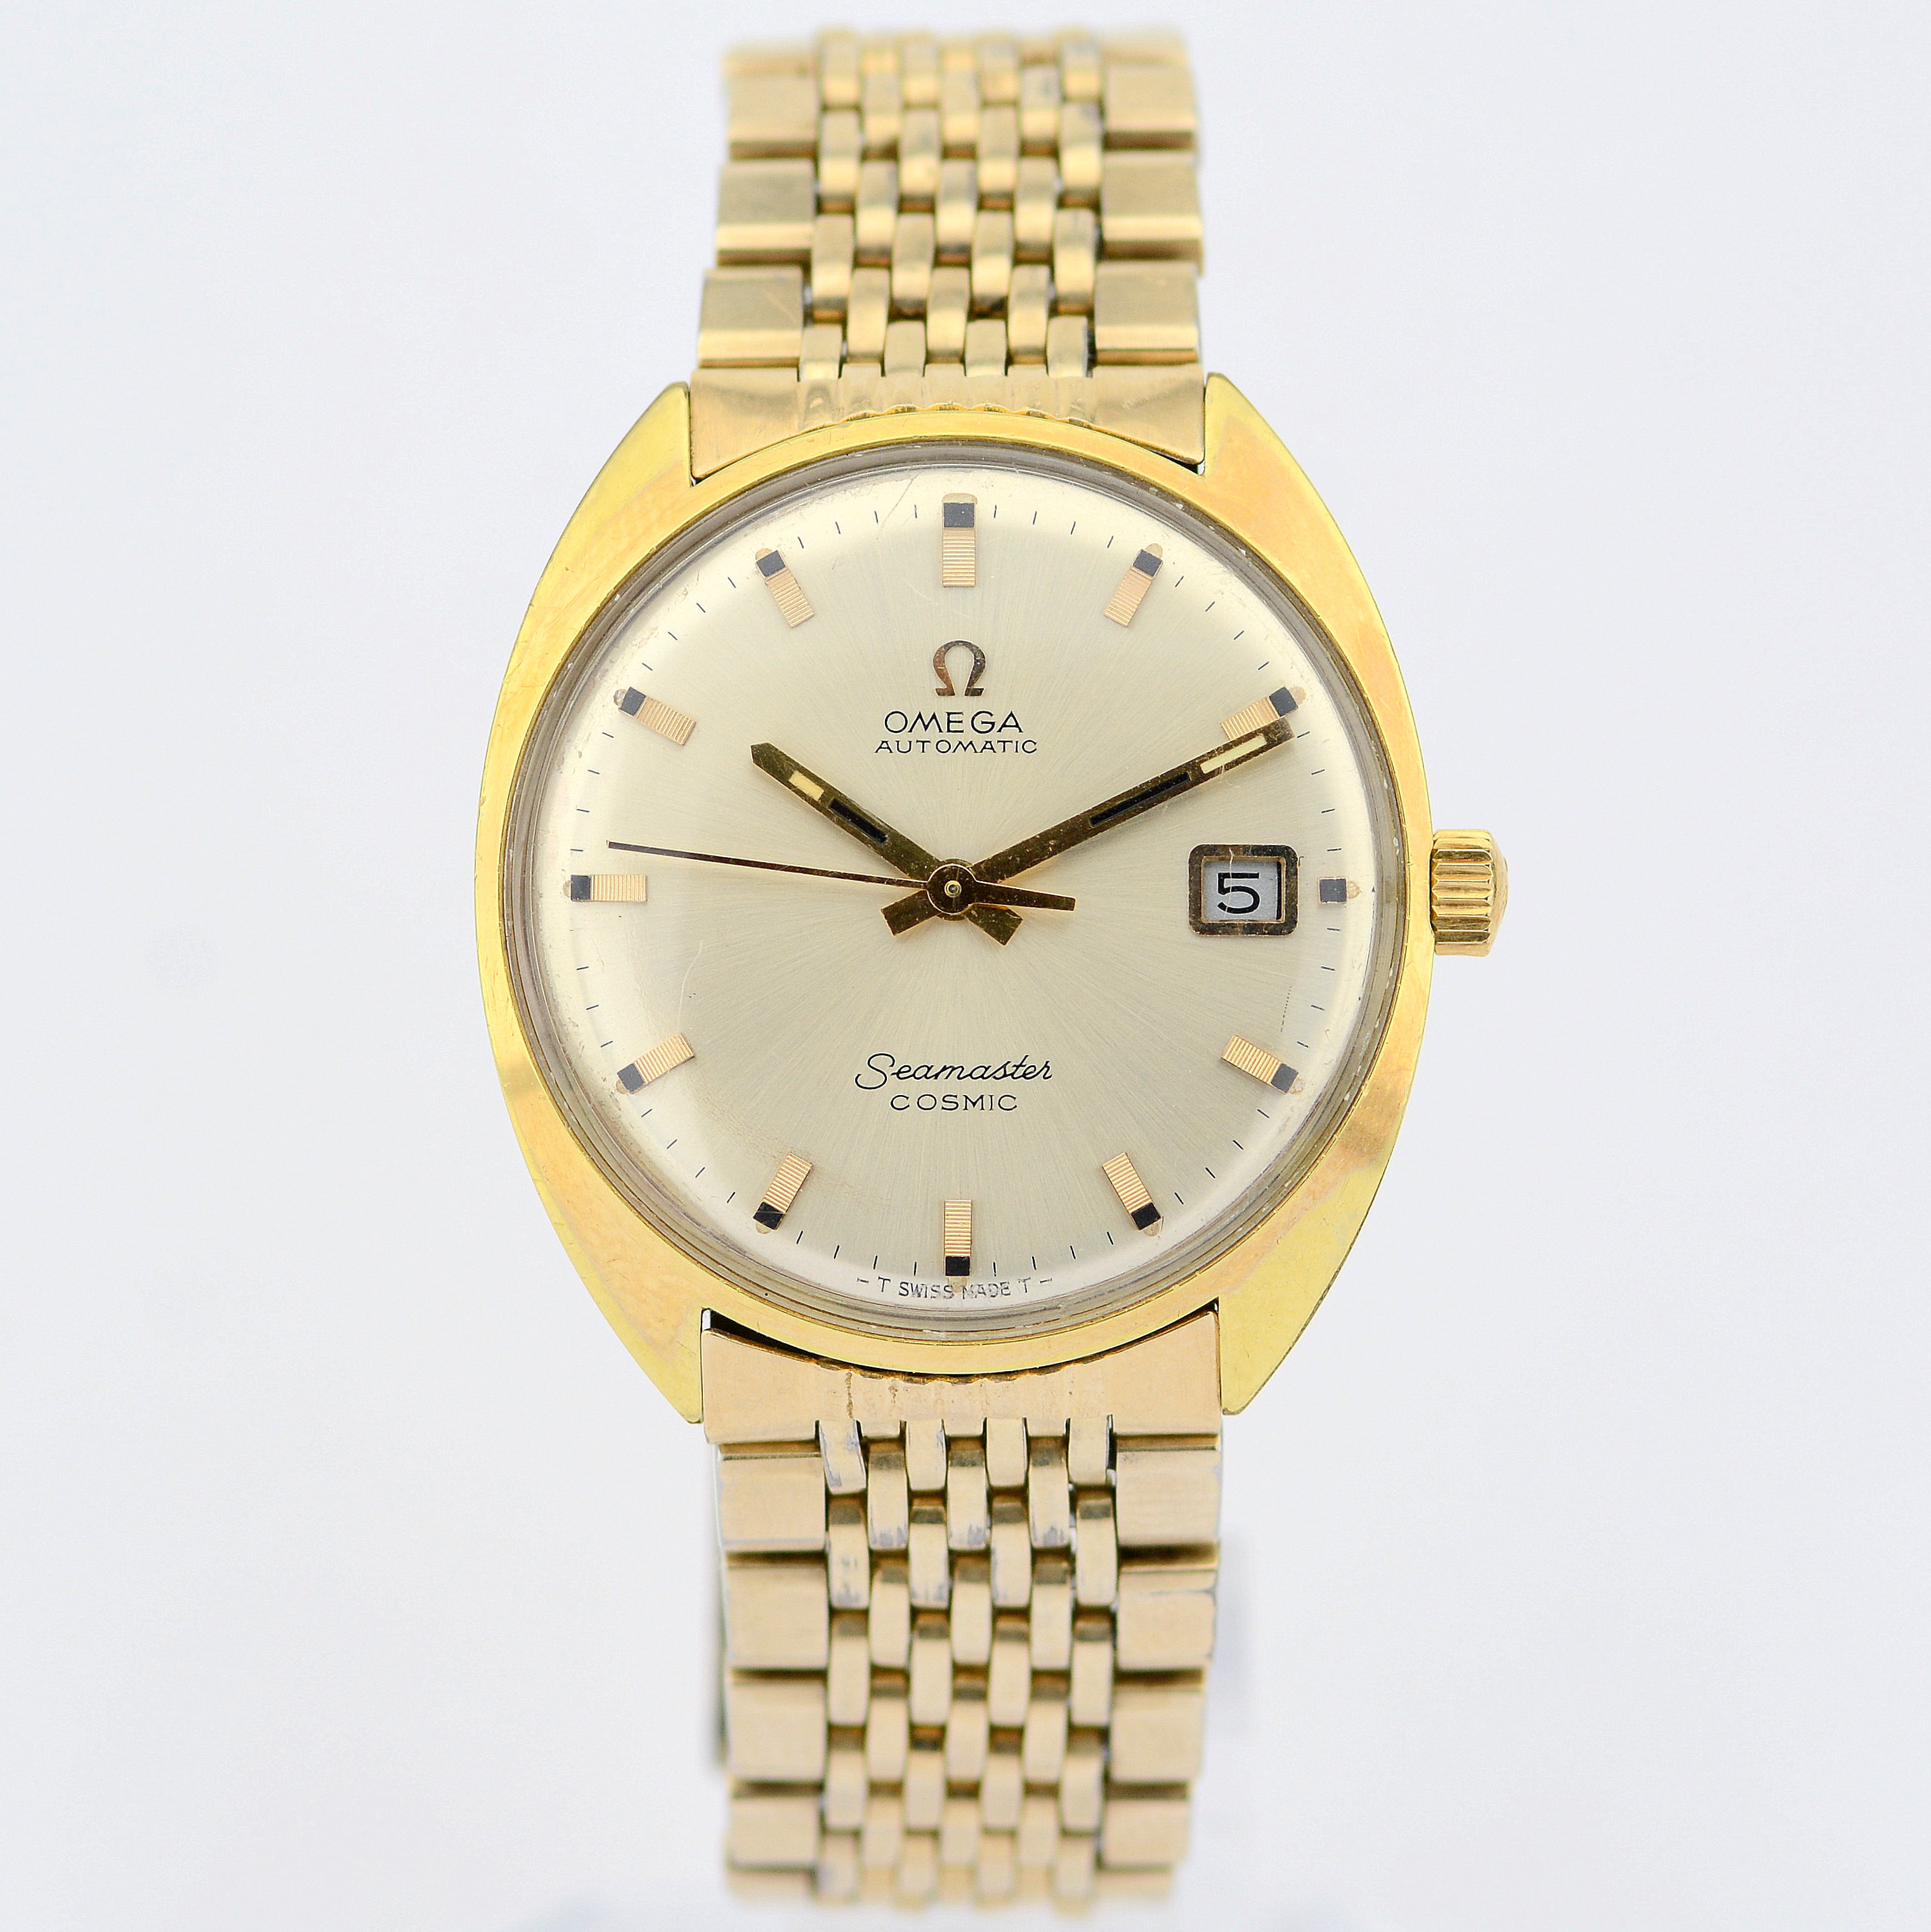 Omega / Seamaster Cosmic Date - Gentlmen's Gold/Steel Wrist Watch - Image 2 of 6